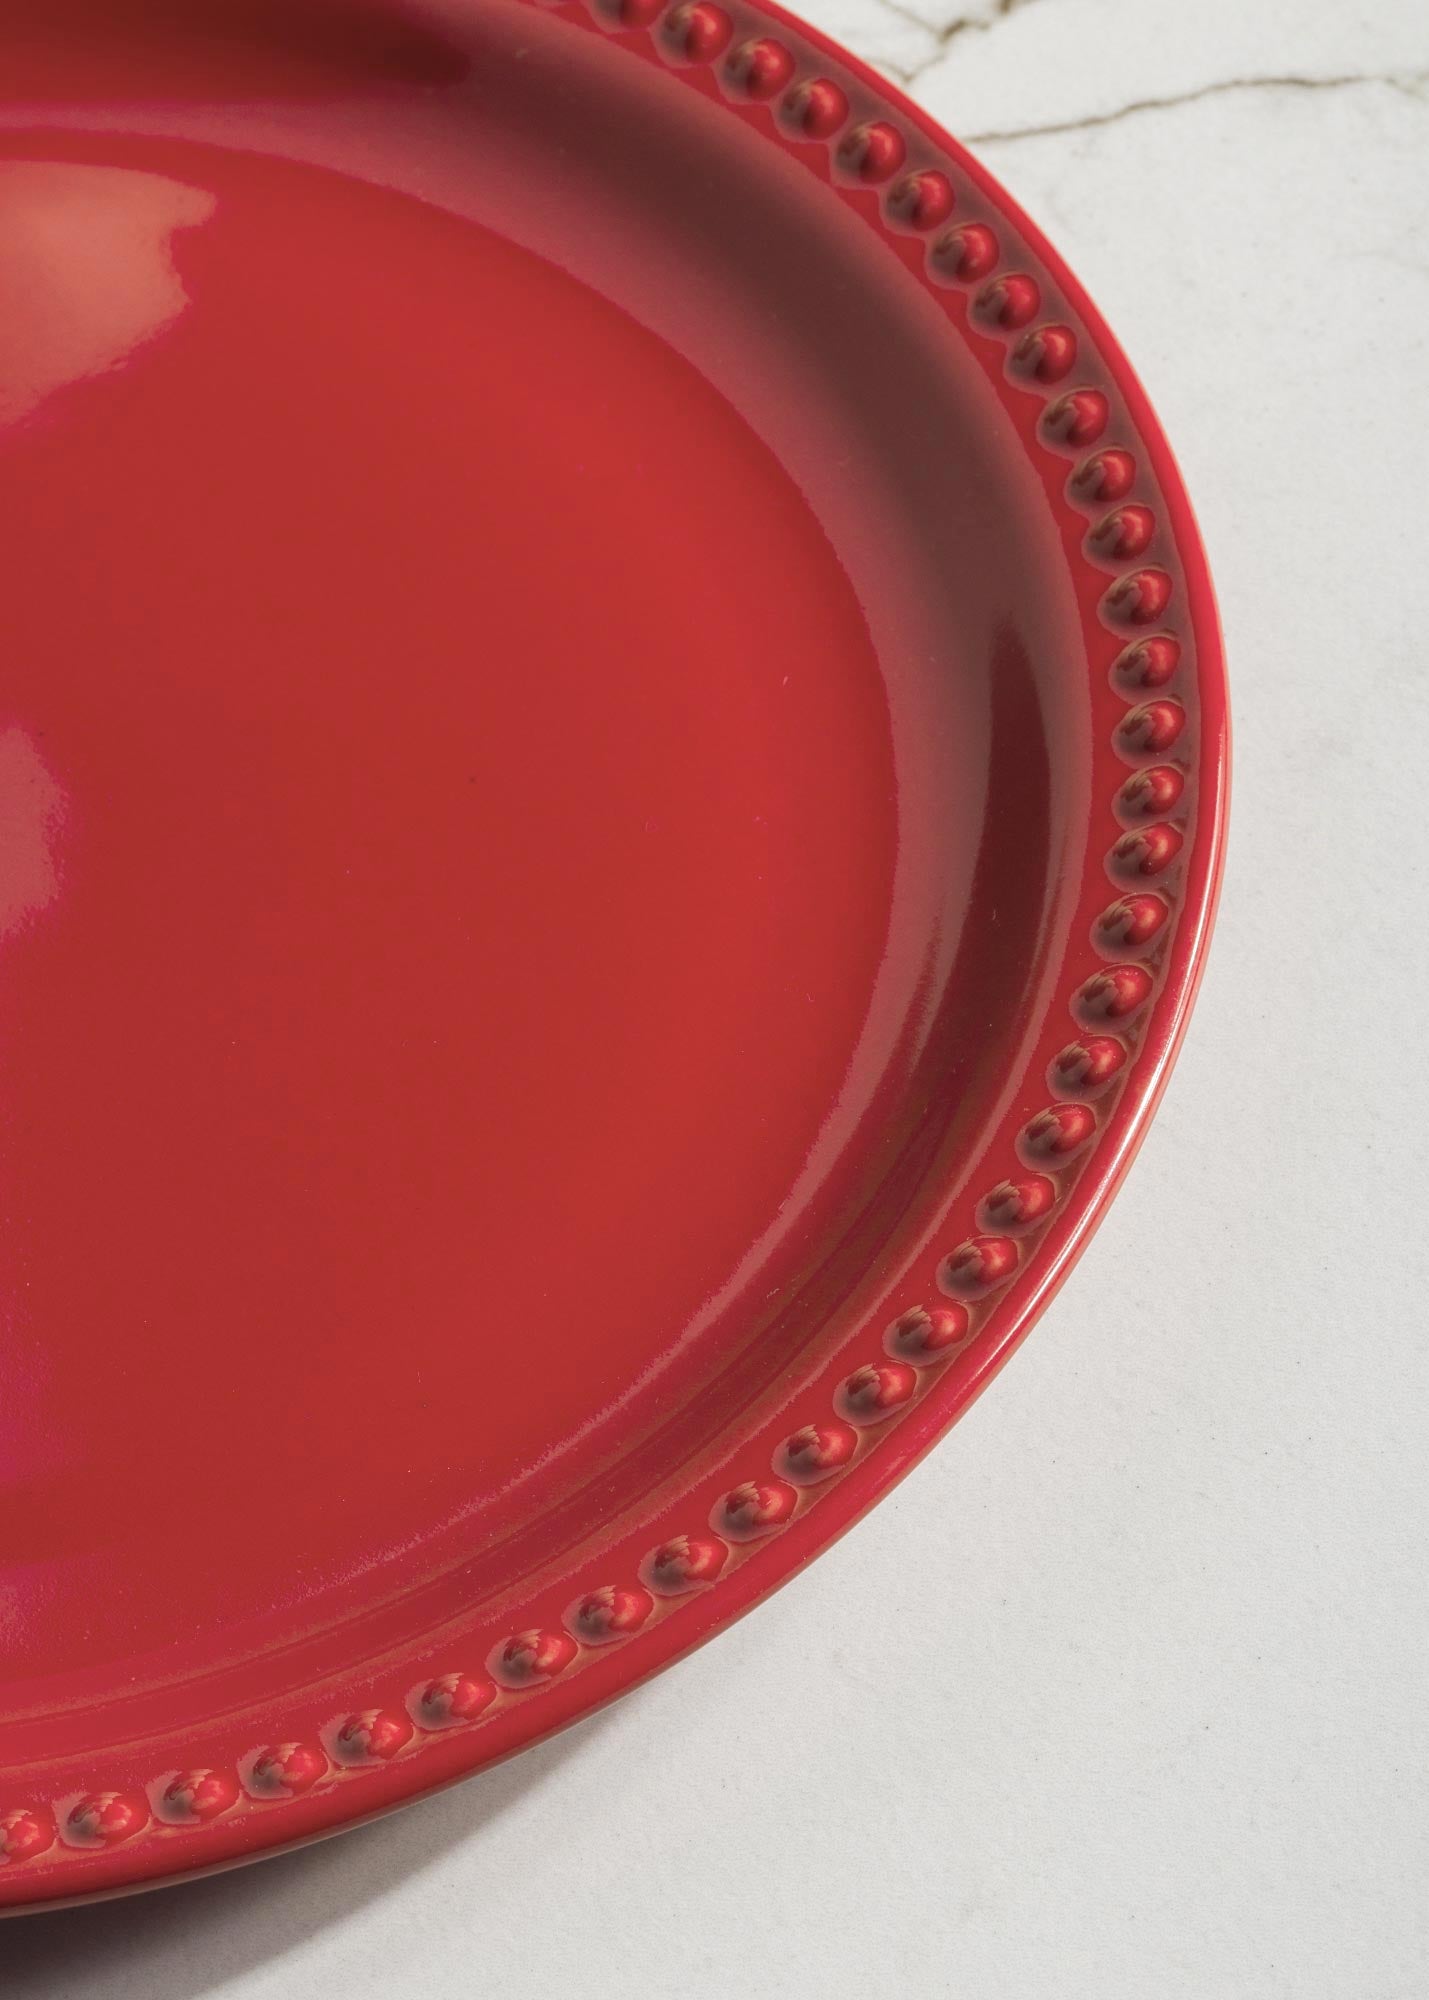 Platos de cerámica rojo Monet